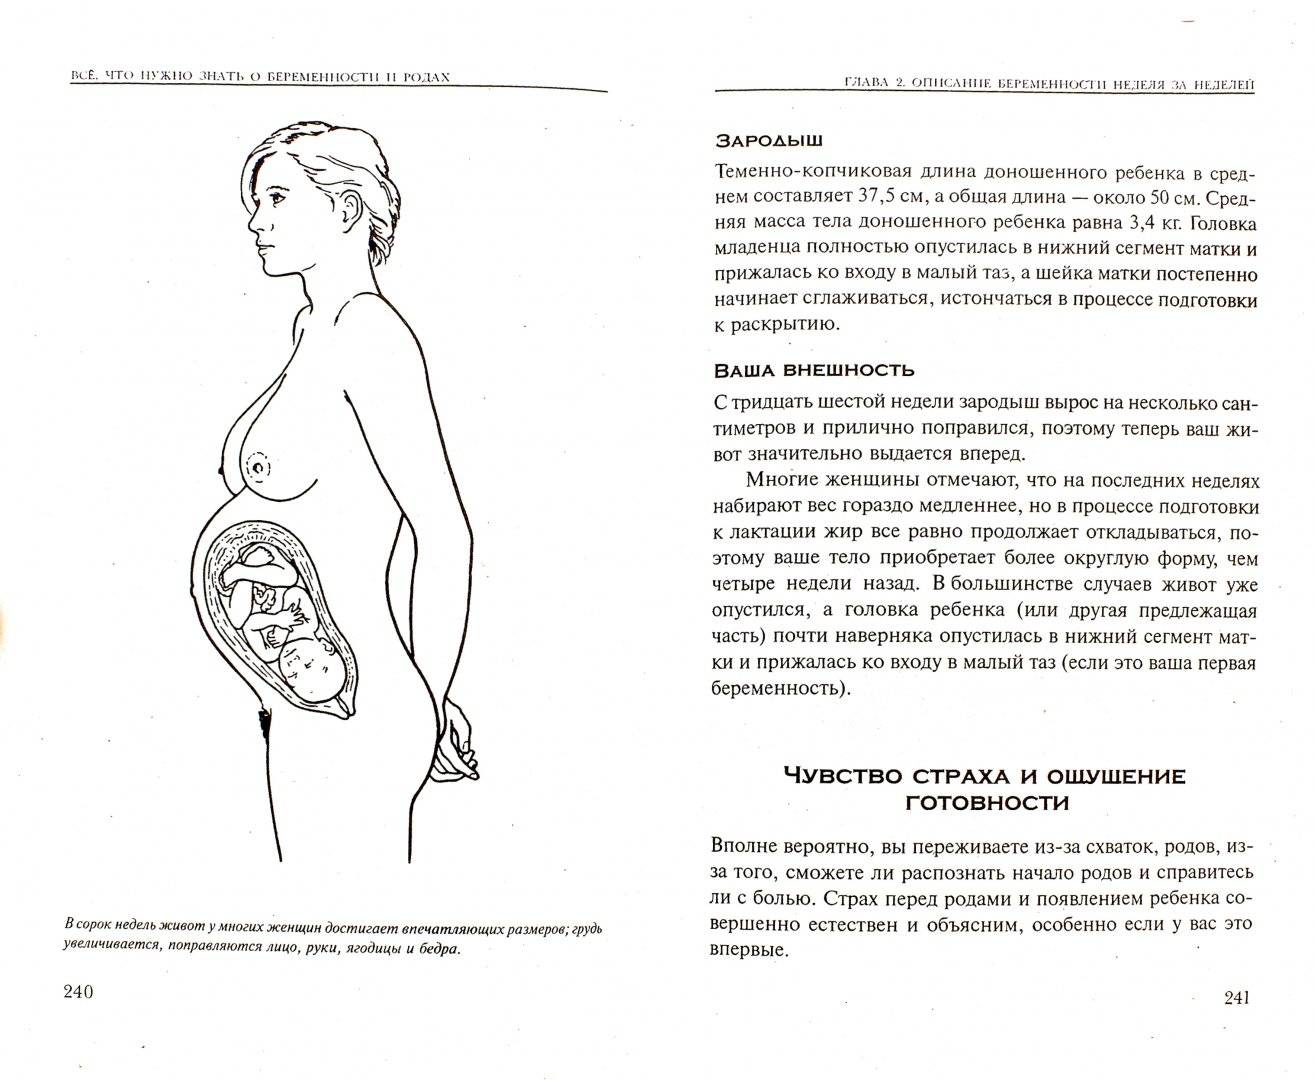 Первая беременность: что нужно знать, особенности планирования и родов, в том числе при многоплодии, факторы риска